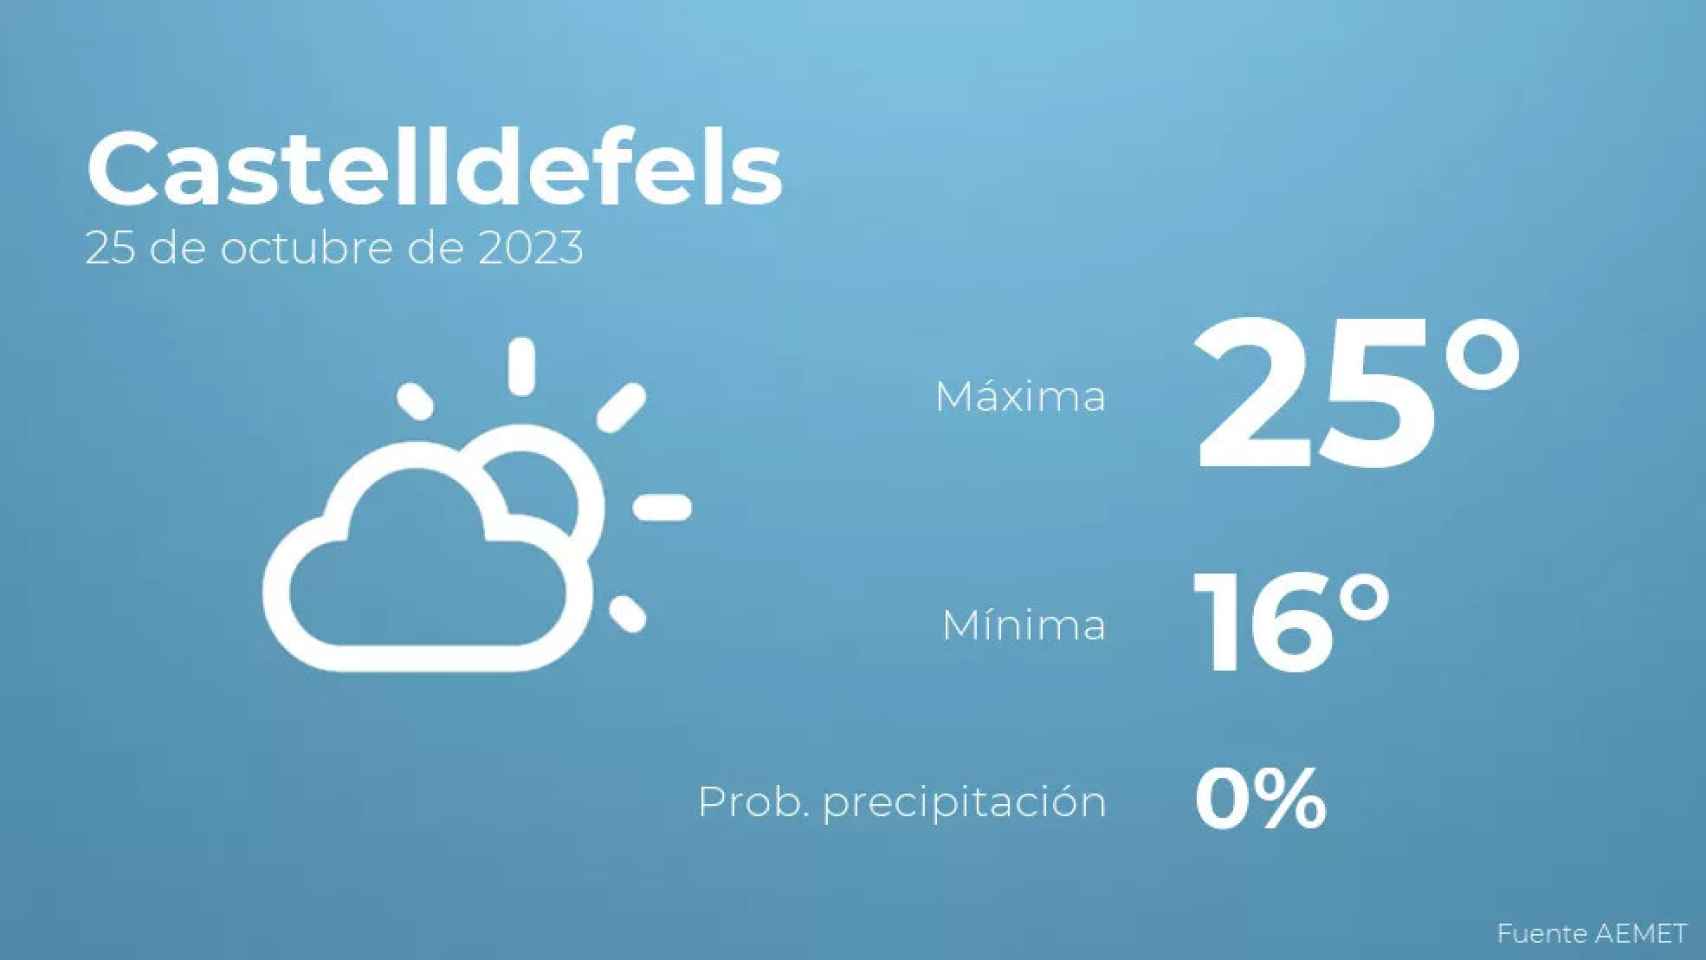 weather?weatherid=12&tempmax=25&tempmin=16&prep=0&city=Castelldefels&date=25+de+octubre+de+2023&client=CRG&data provider=aemet